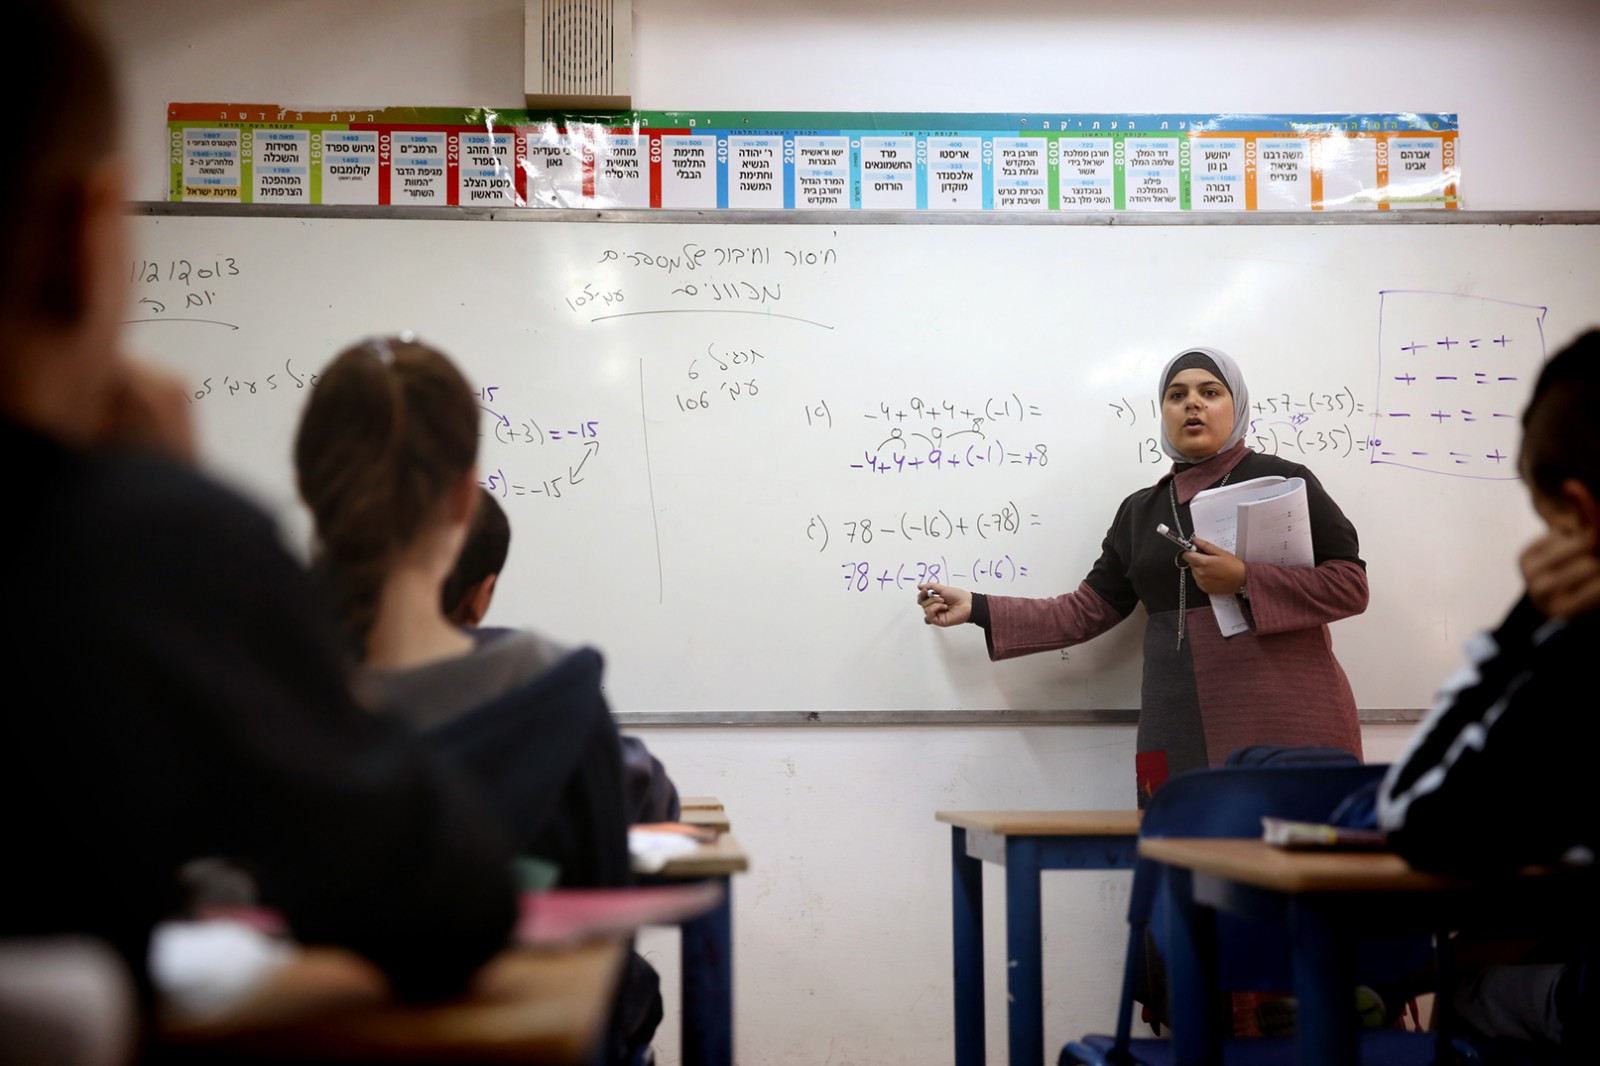 מורה מהמגזר הערבי בחטיבת ביניים בקדימה. תמונת ארכיון, למצולמים אין קשר לכתבה. (צילום: פלאש 90)